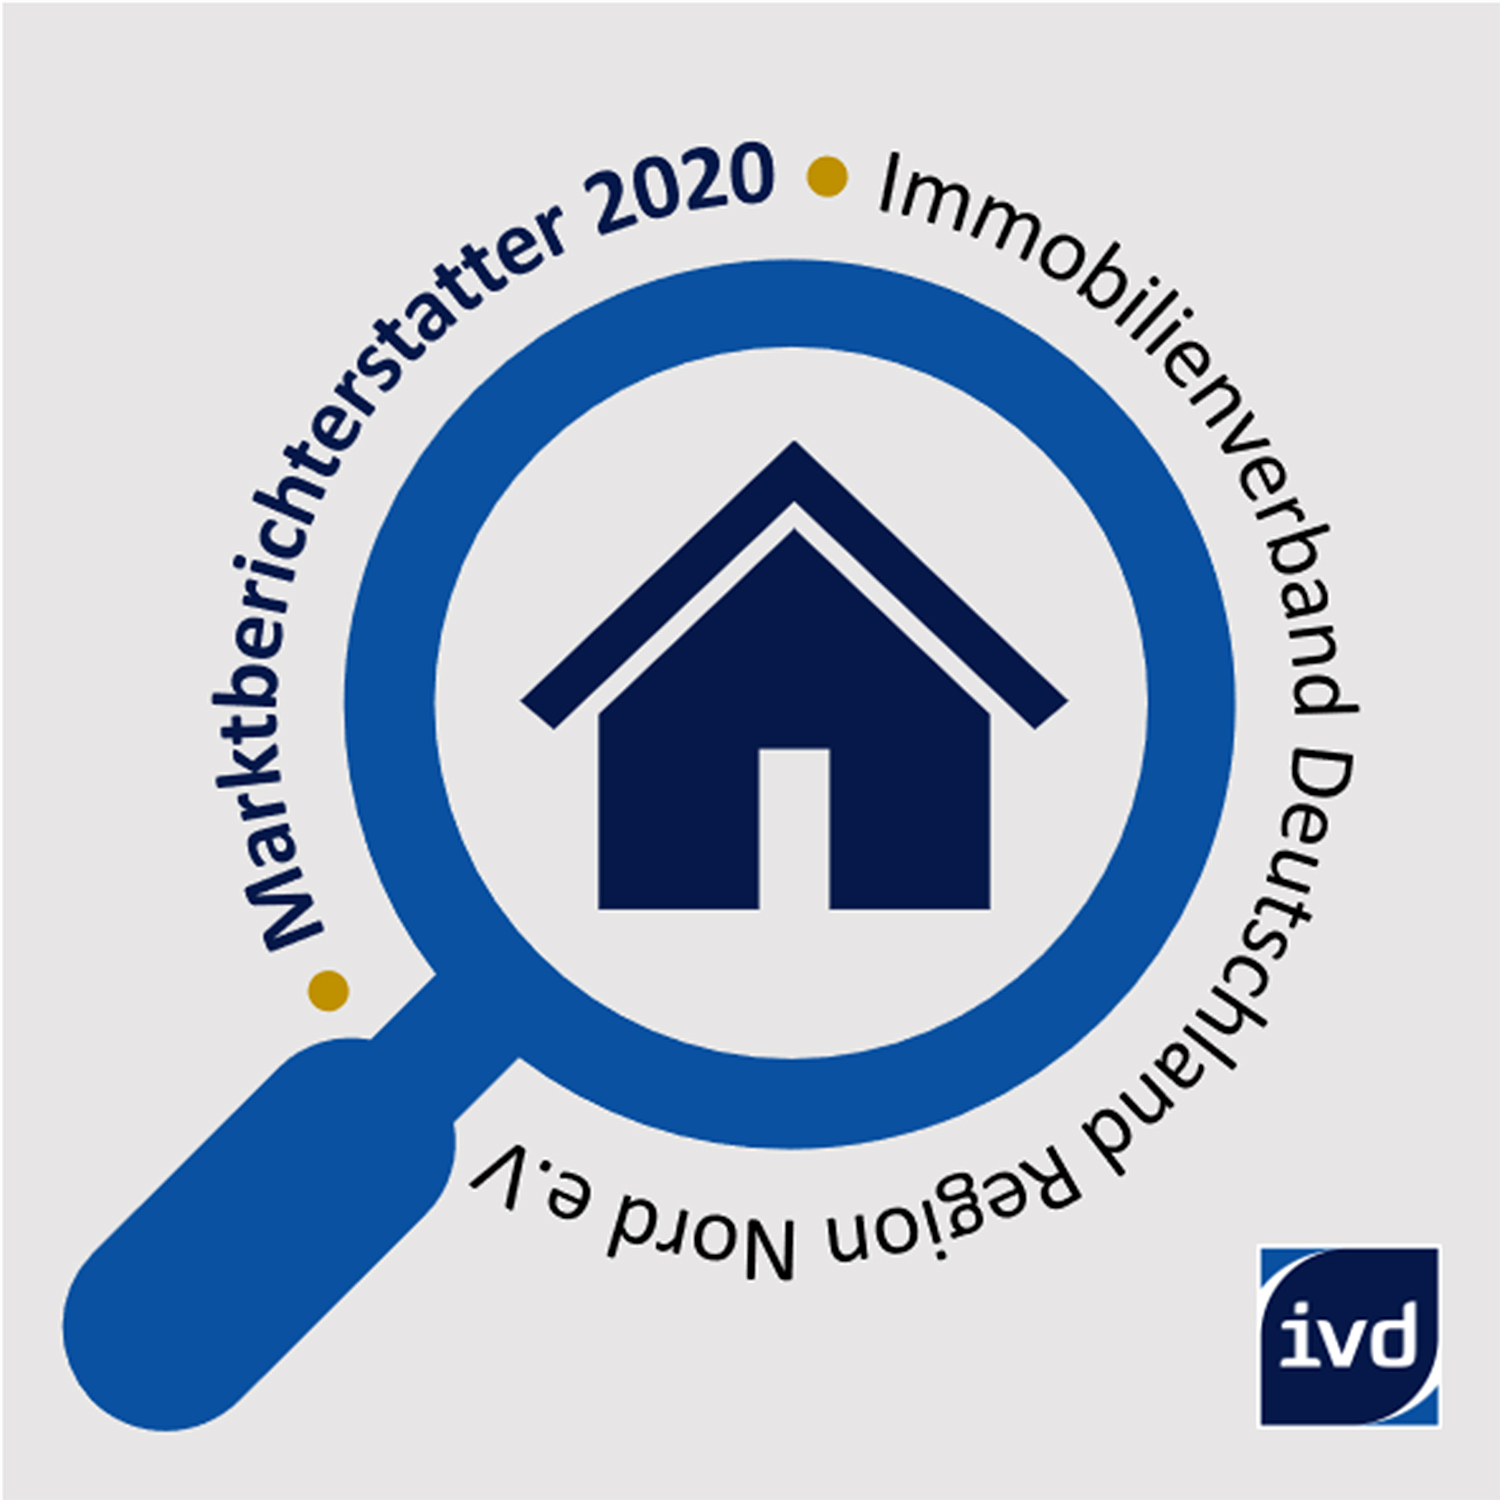 Das Ausbildungszertifikat des Immobilienverband Deutschland für 2019